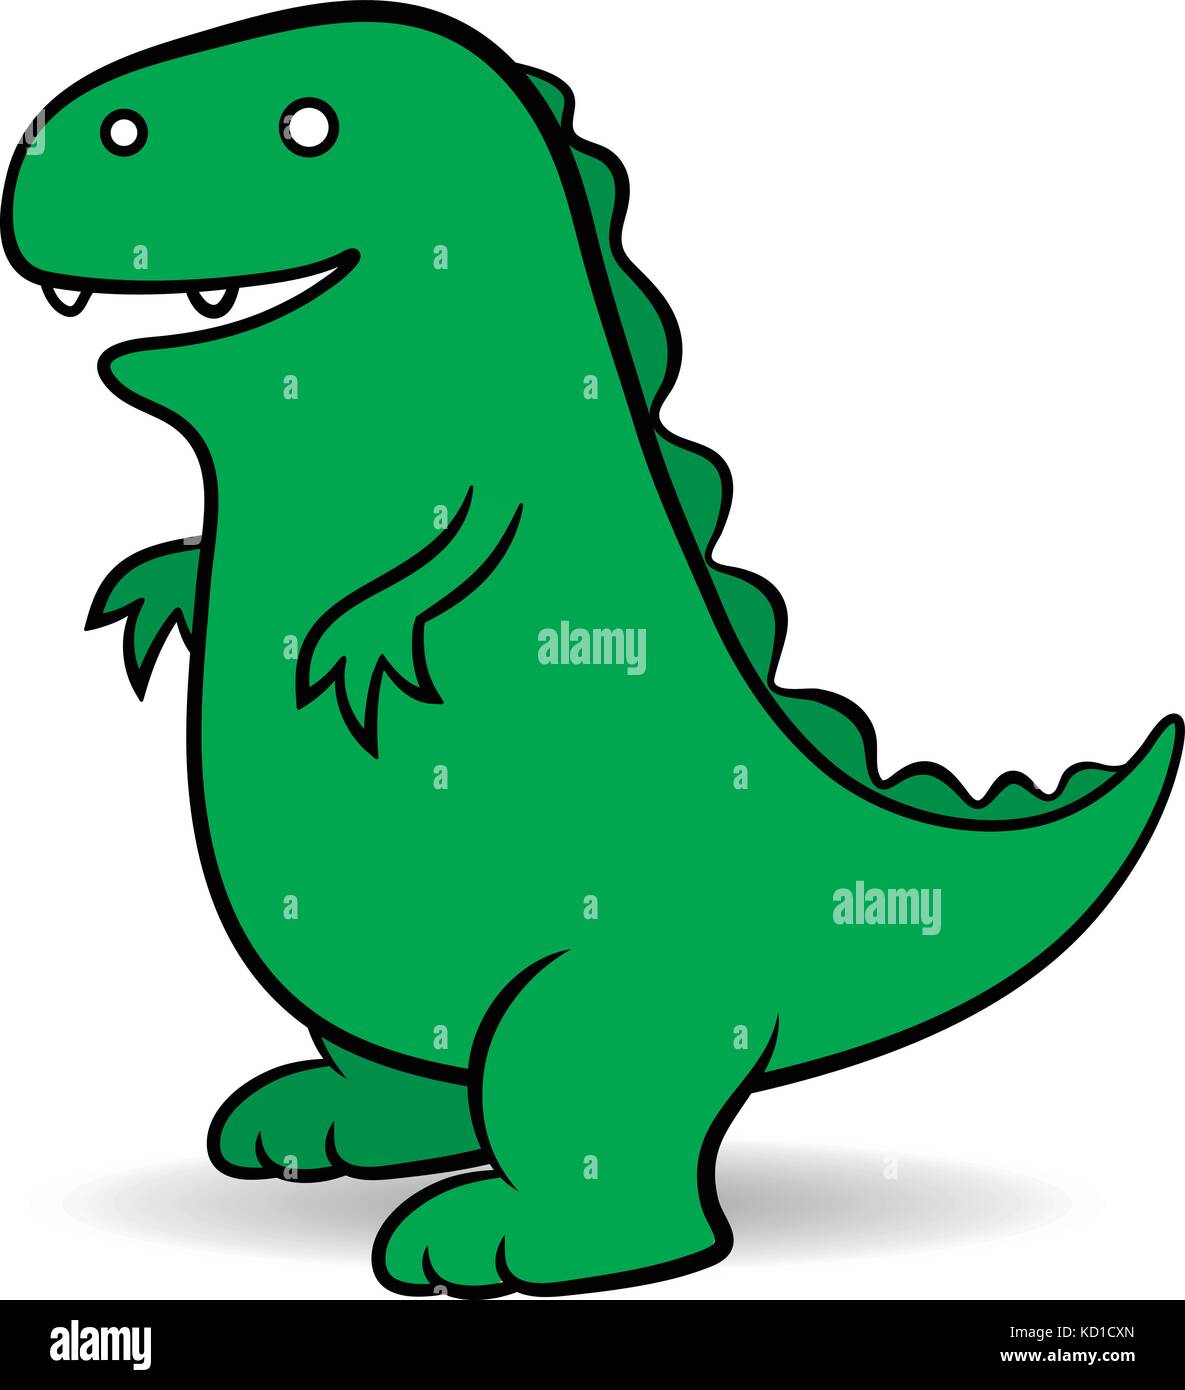 Green Cartoon un gigantesco mostro godzilla ritratto come un rettile anfibio che assomiglia a un dinosauro, semplice illustrazione a fumetti vettoriale Illustrazione Vettoriale